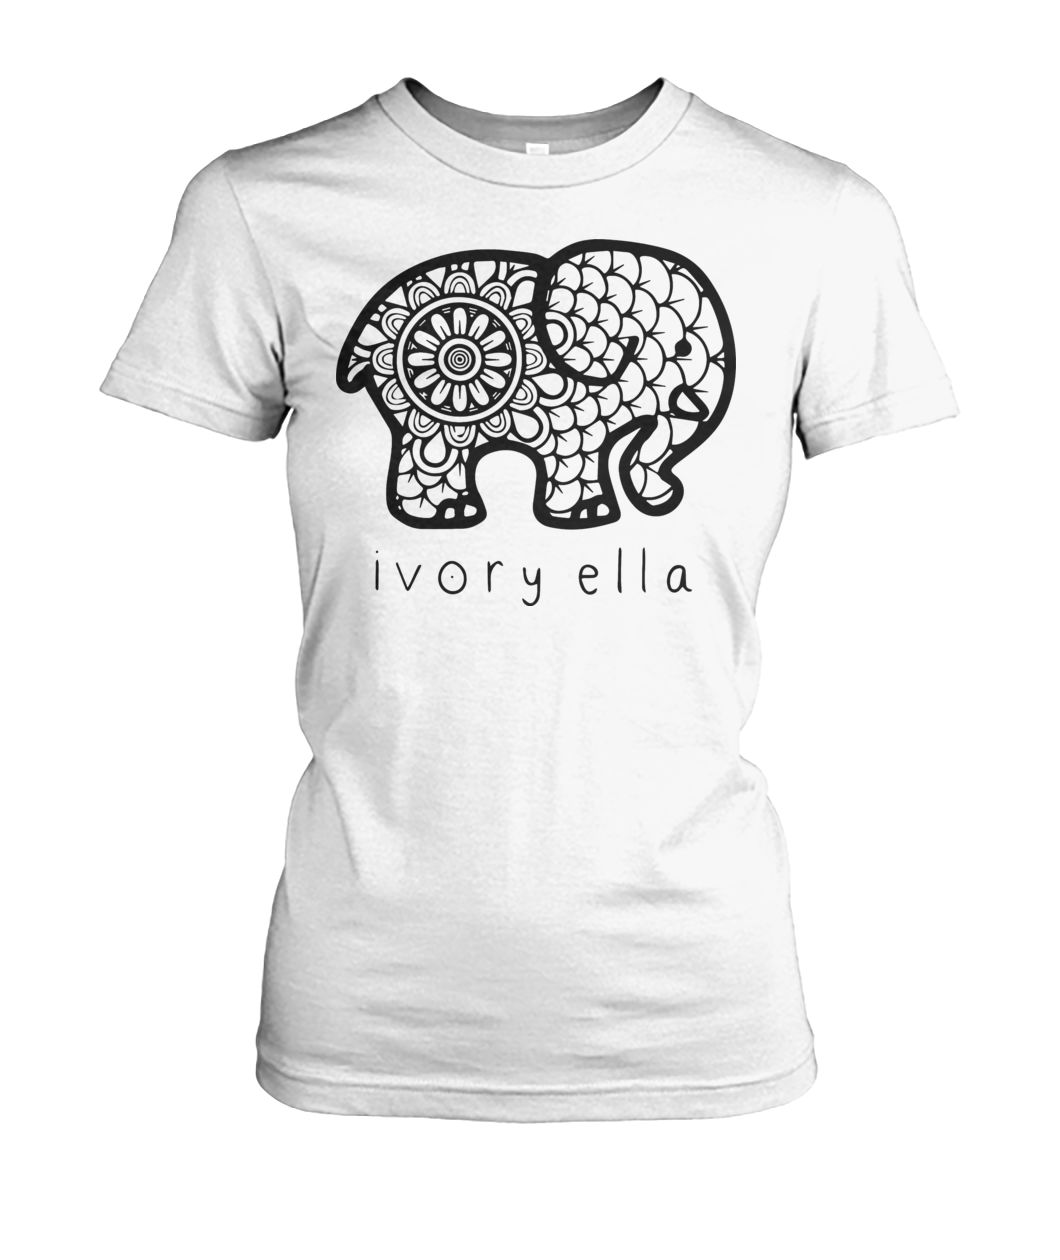 Ivory ella elephant women's crew tee